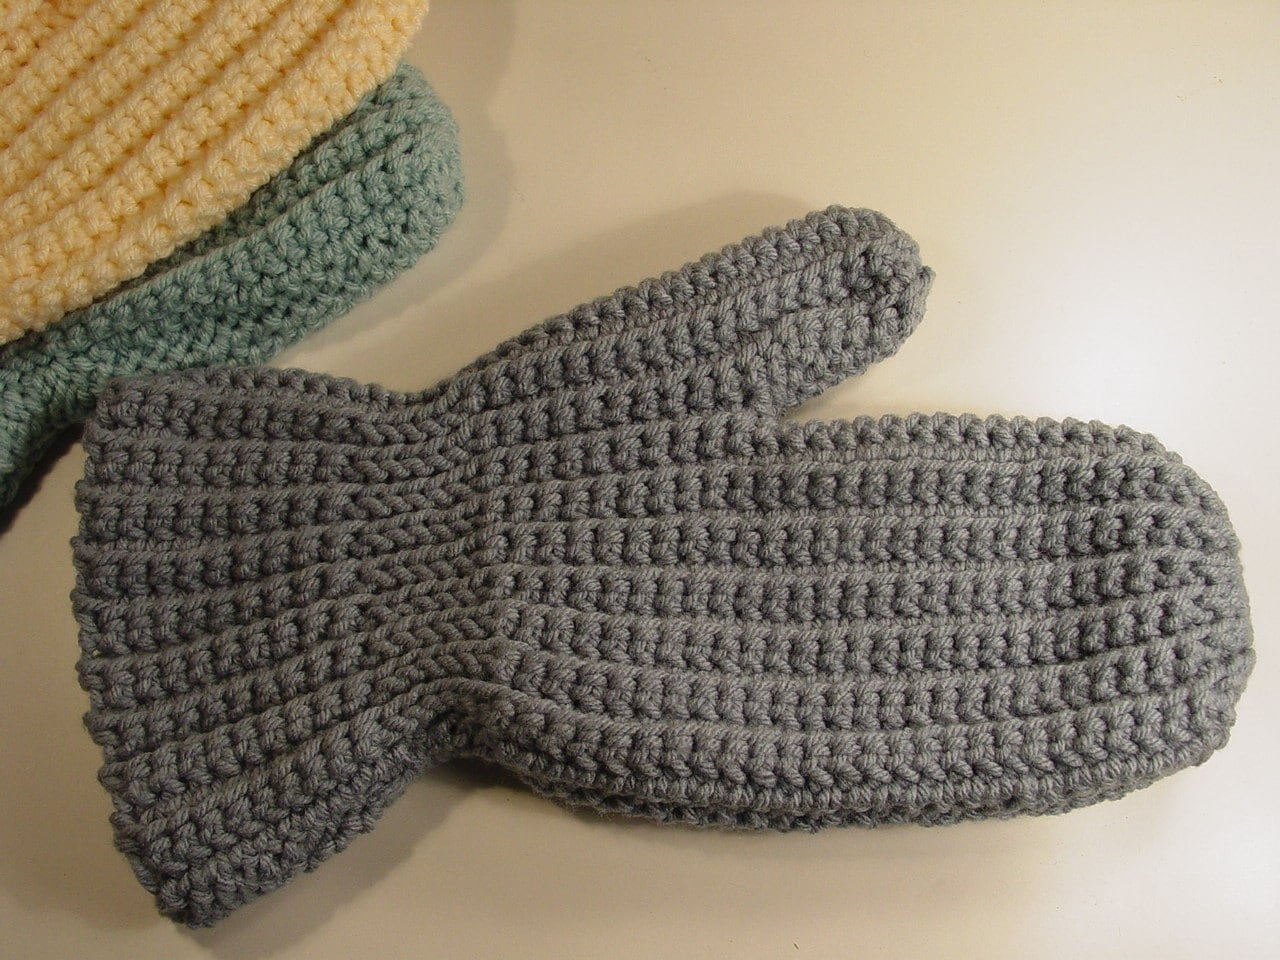 Mitten Remodel | crochet today